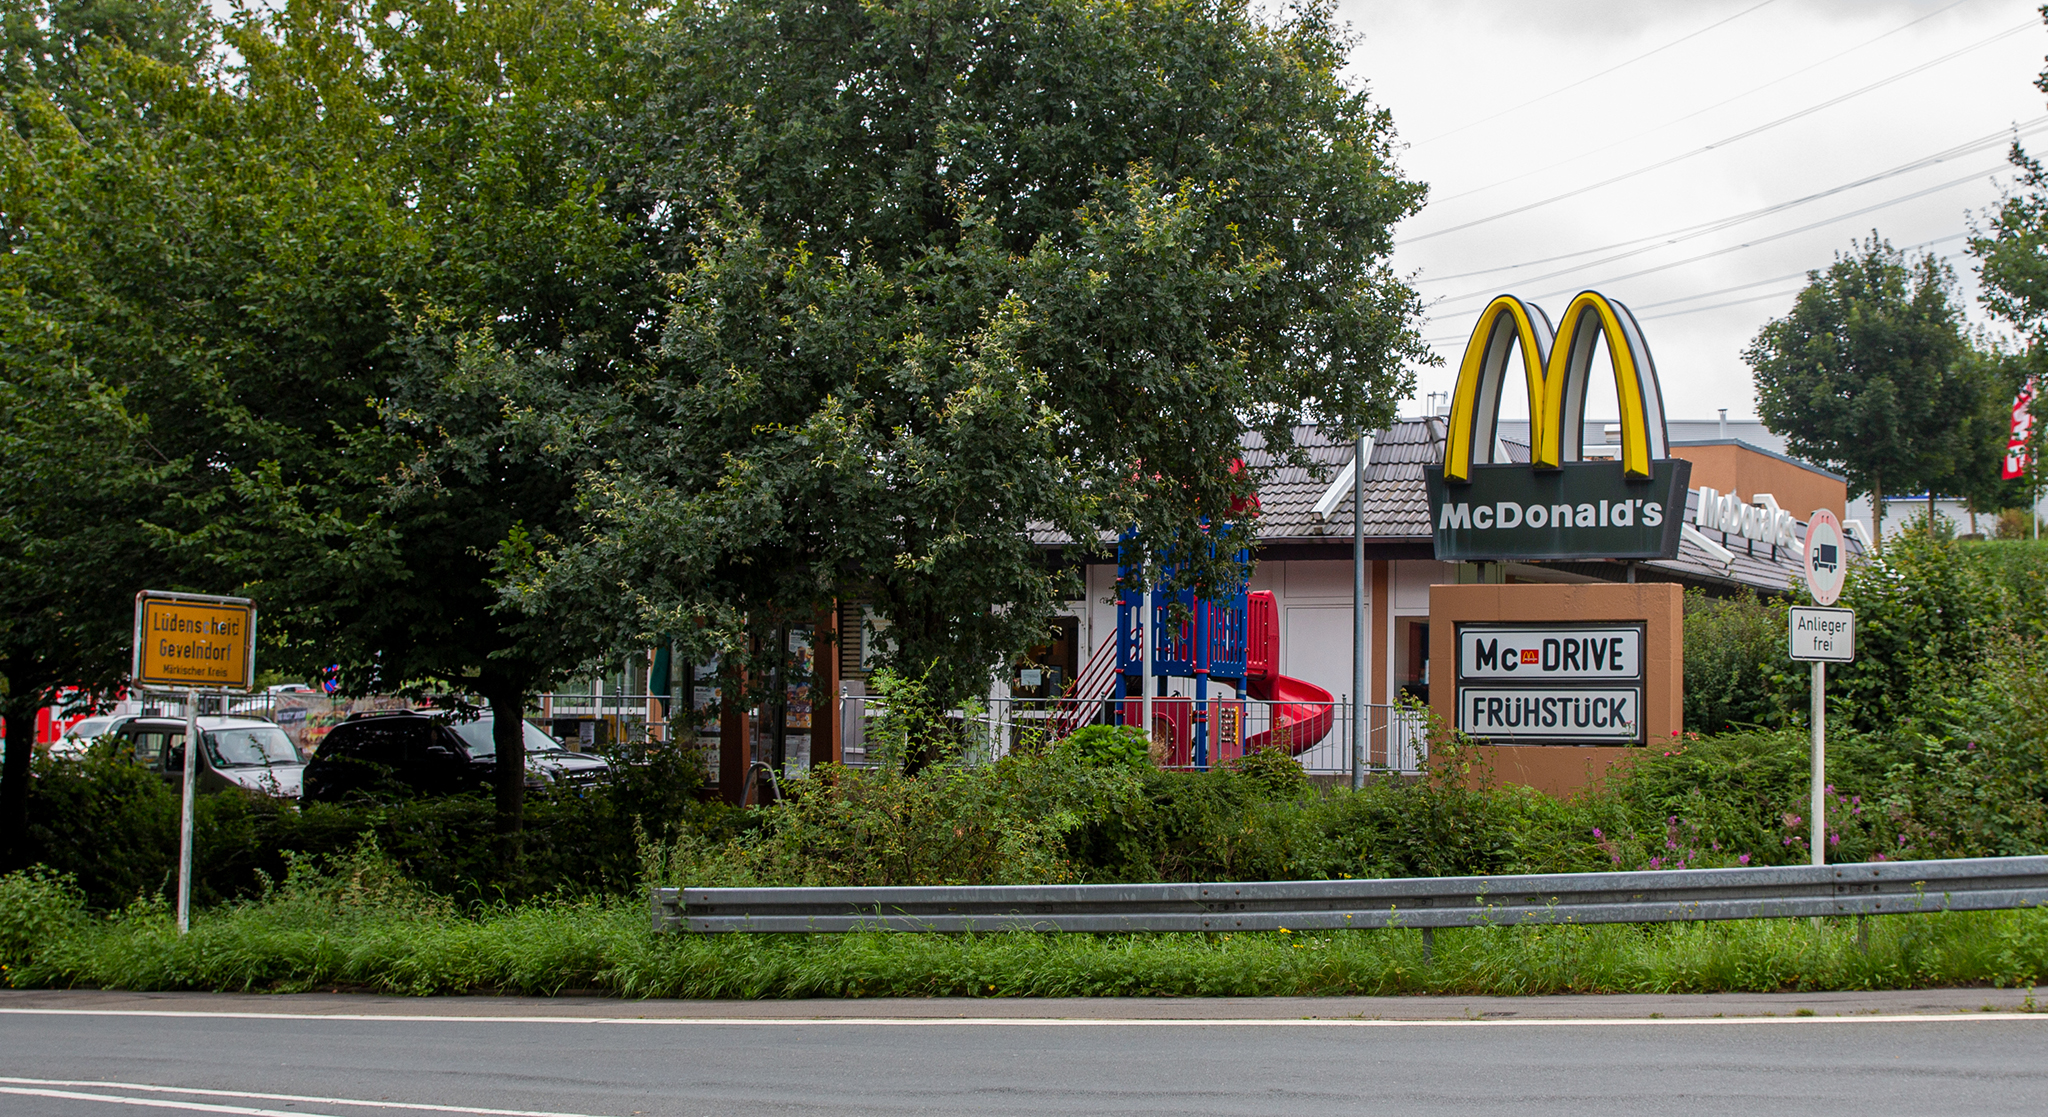 Das McDonald’s-Restaurant in Lüdenscheid (Brockhauser Weg)